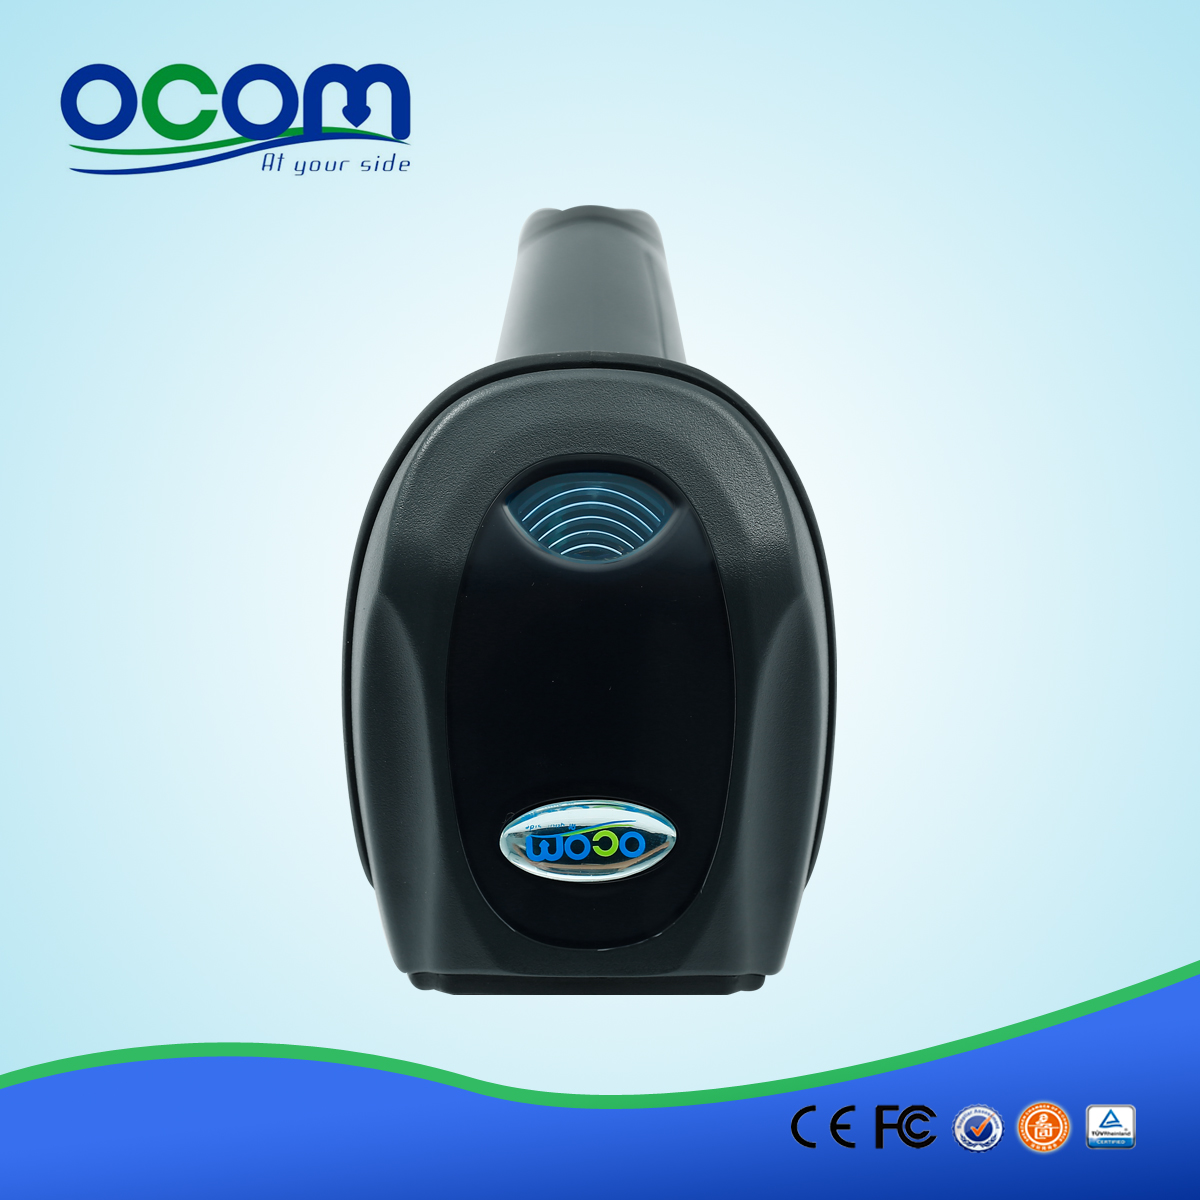 OCBS-W232 drahtlose tragbare Bluetooth-Barcode-Scanners mit hoher Reichweite